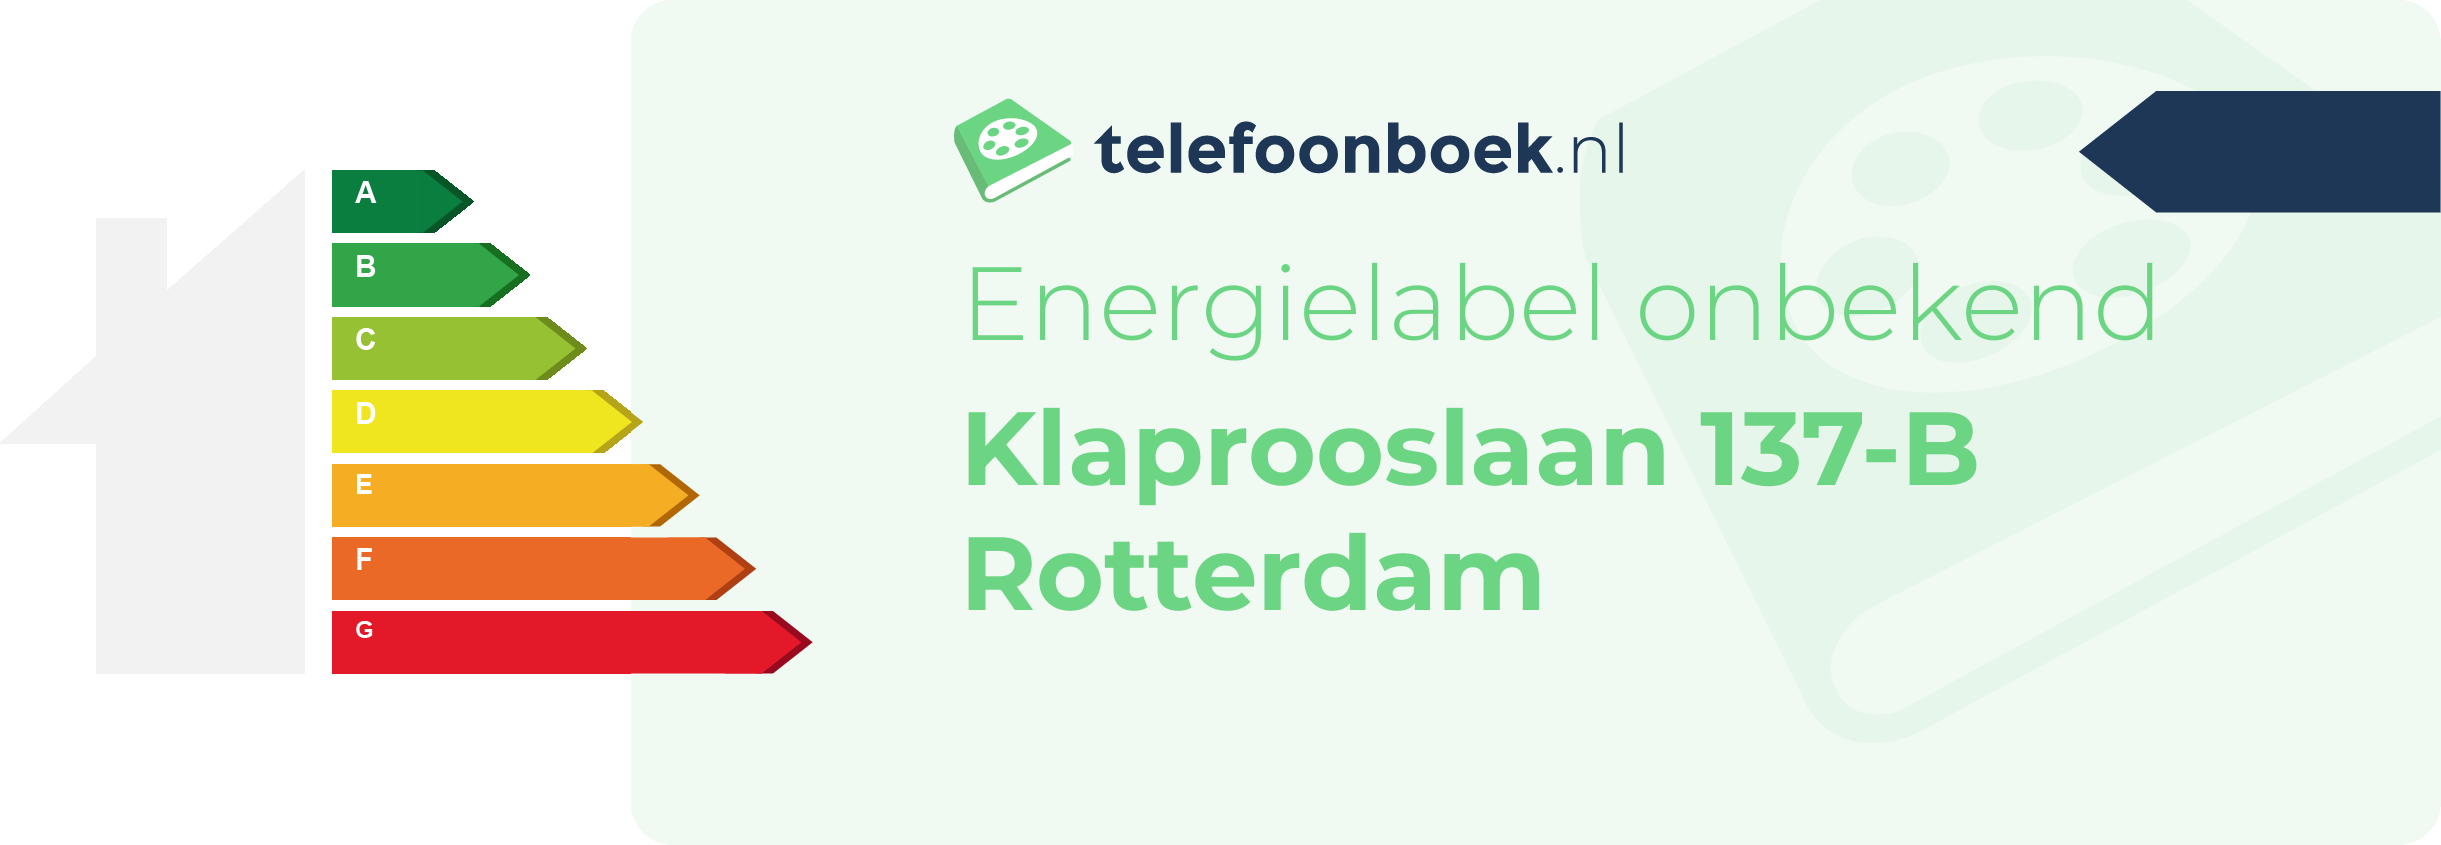 Energielabel Klaprooslaan 137-B Rotterdam